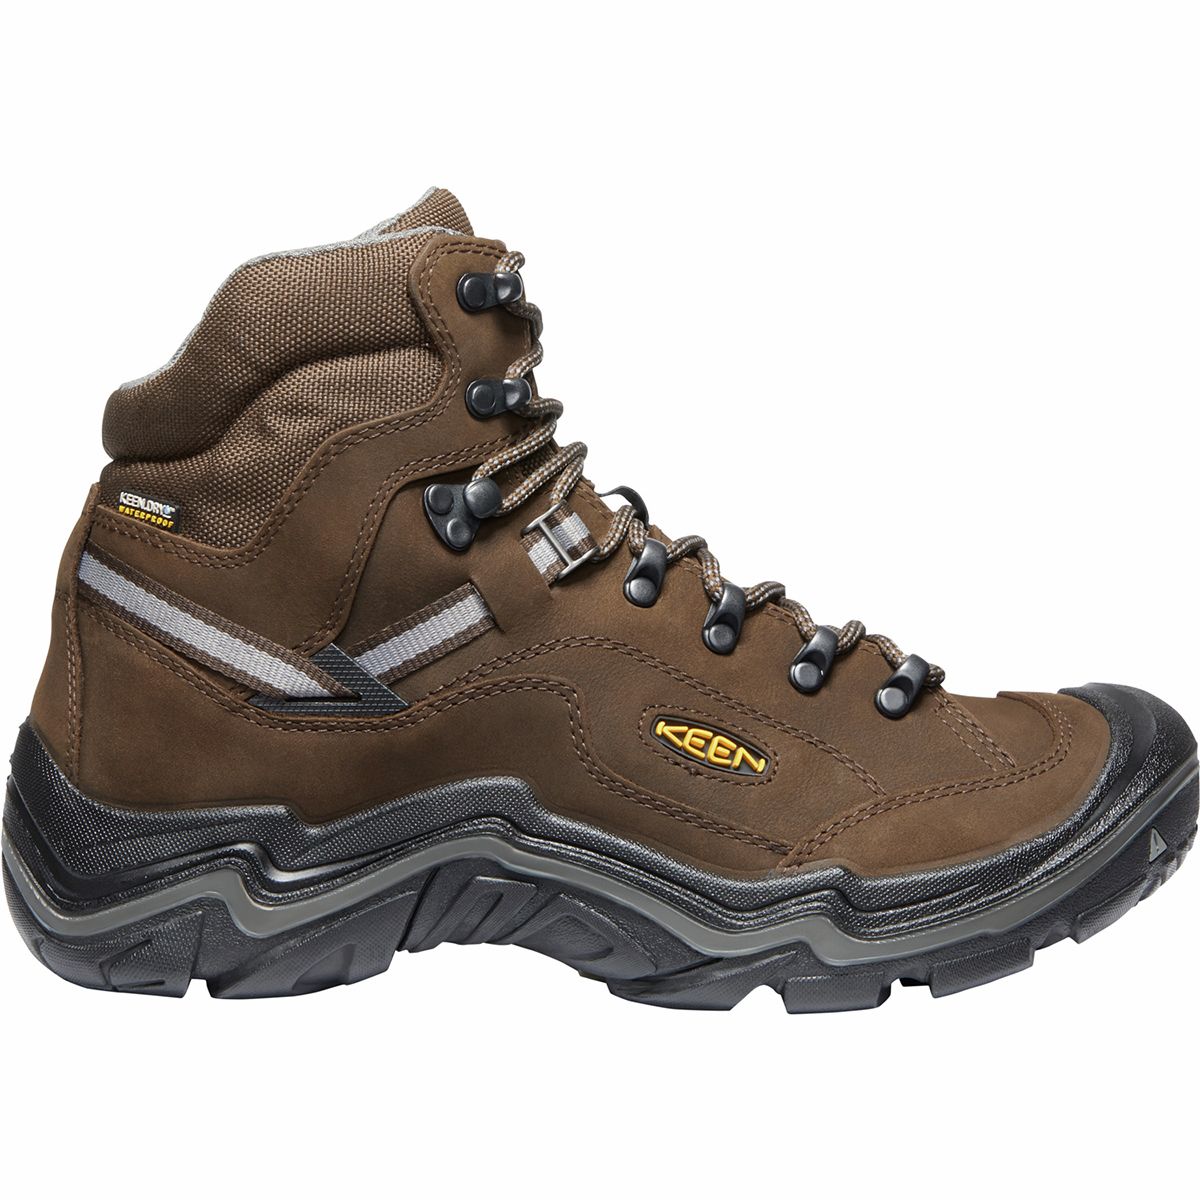 KEEN Durand Mid Waterproof Hiking Boot - Men's -  191190233214